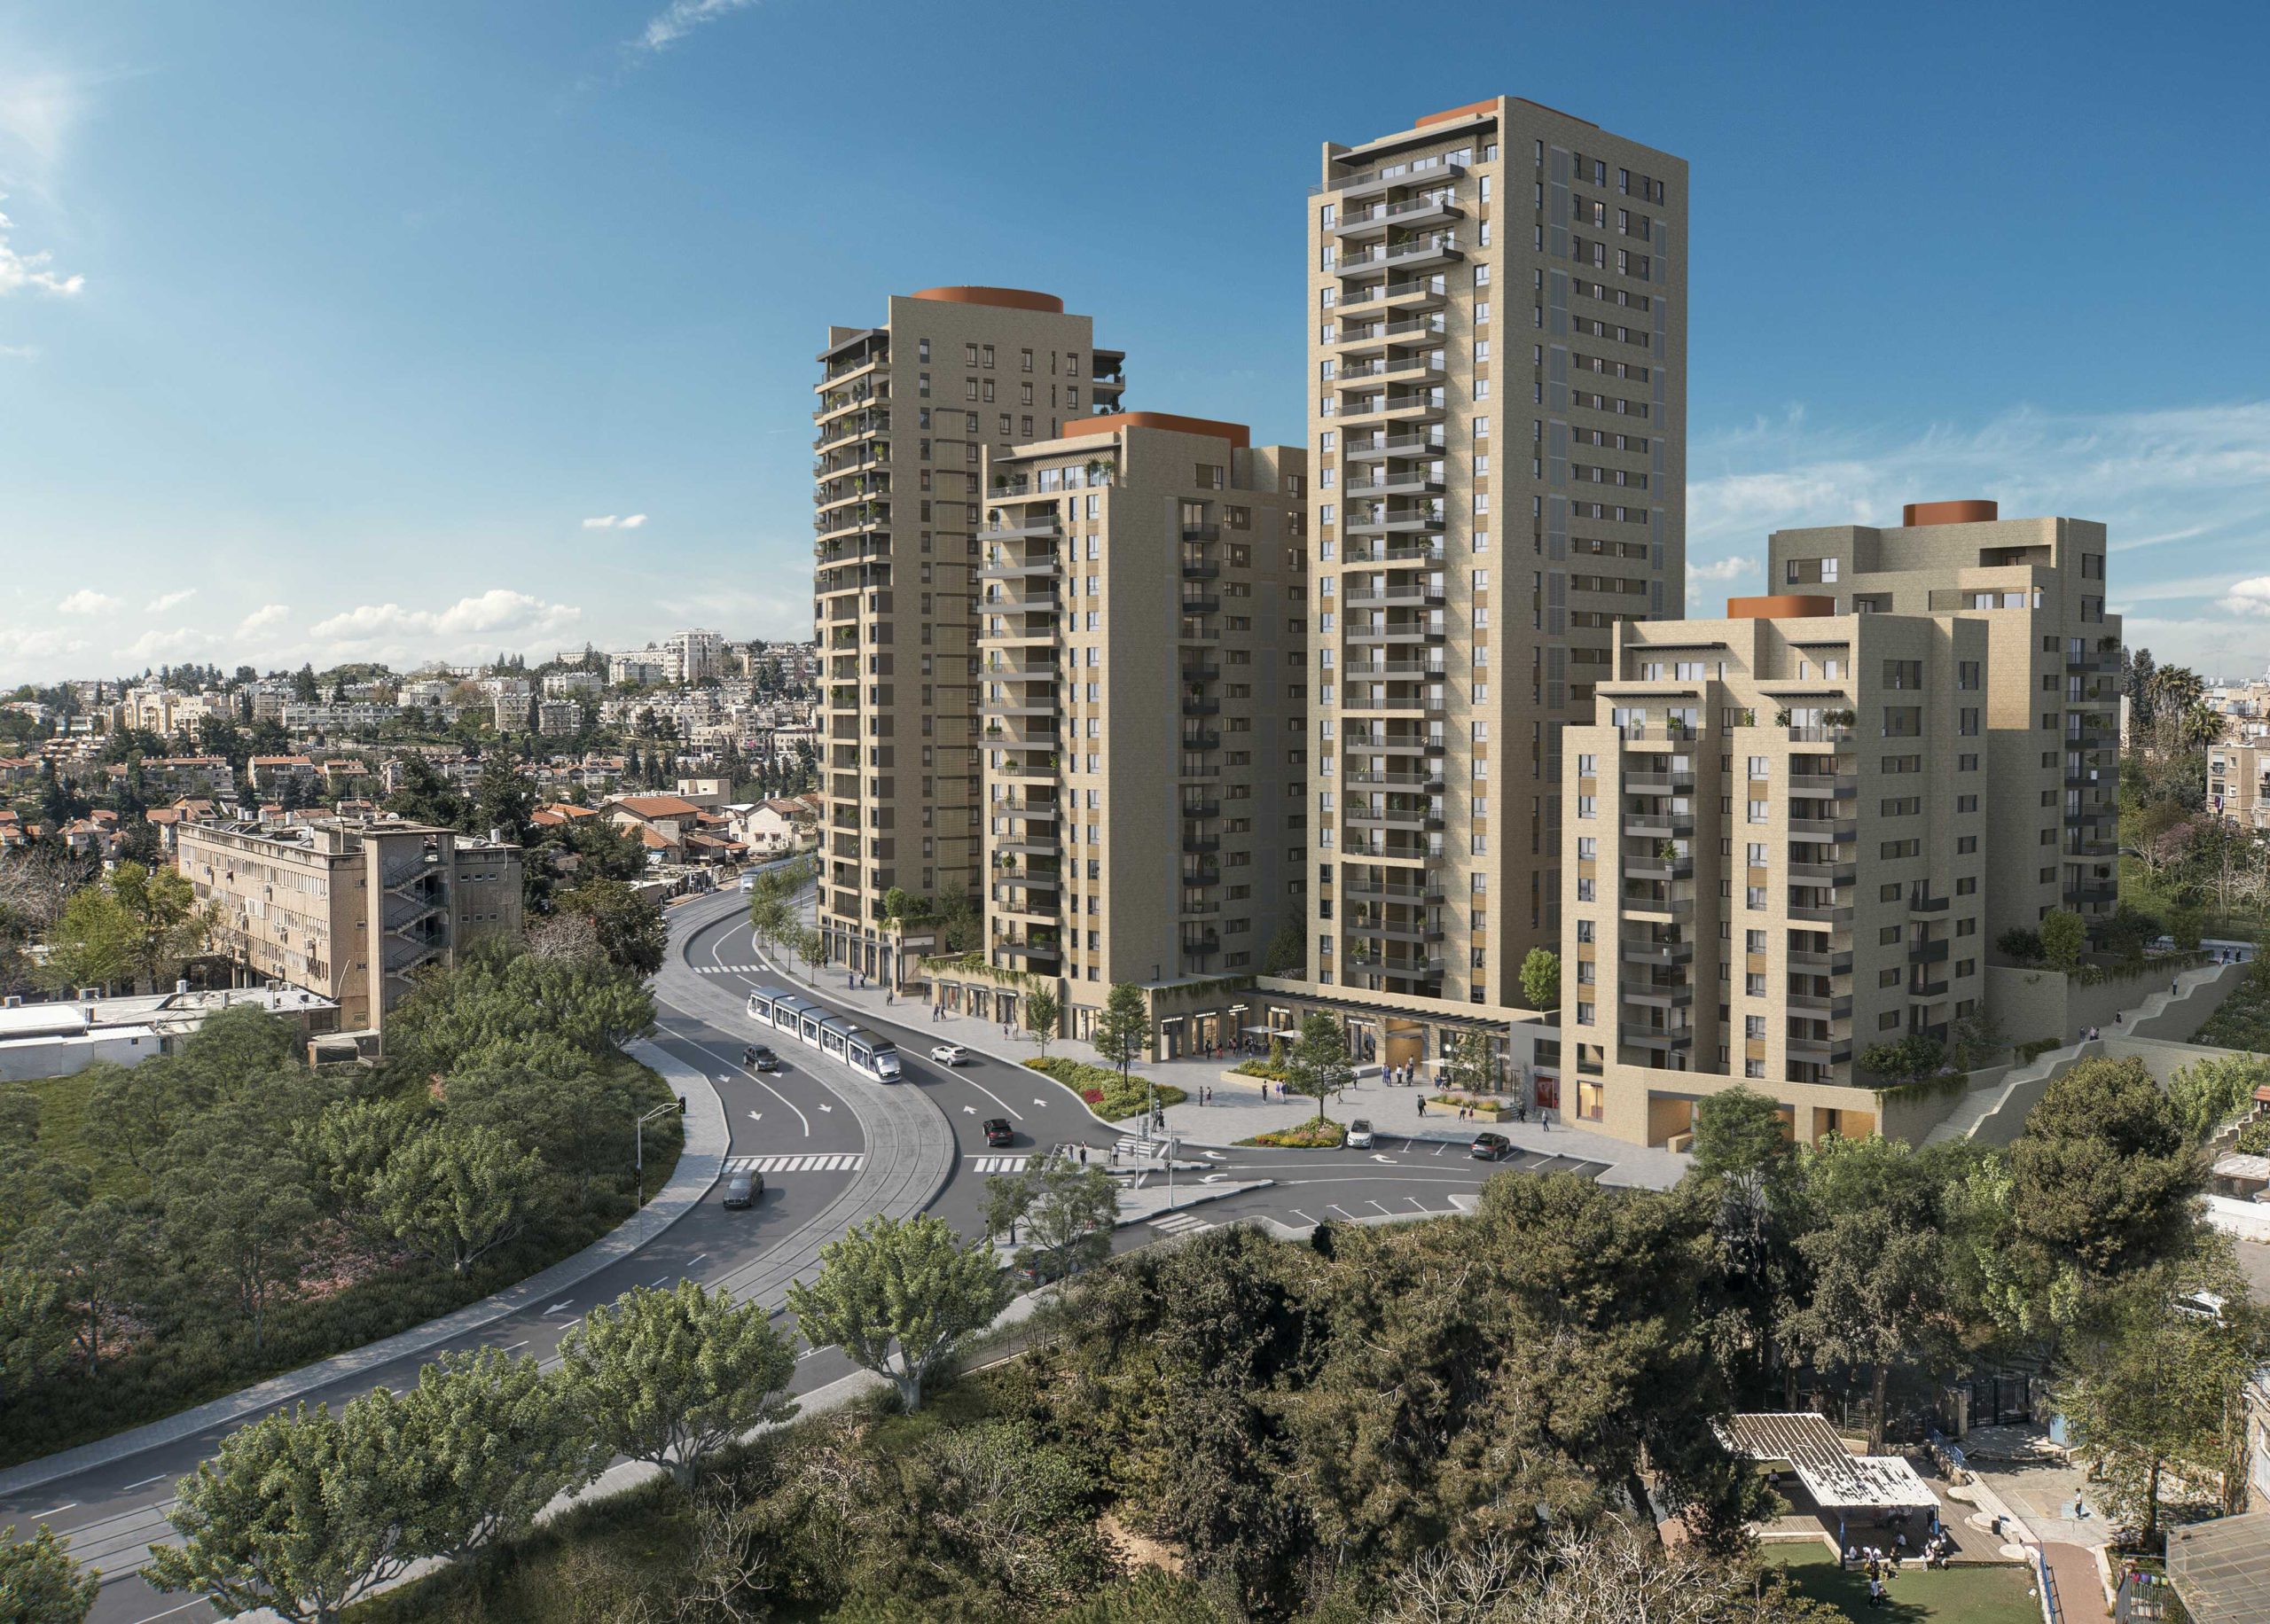 סינימטק חדש יוקם בשכונת קריית יובל בירושלים – במסגרת המתחם השני בפרויקט שדרות היובל